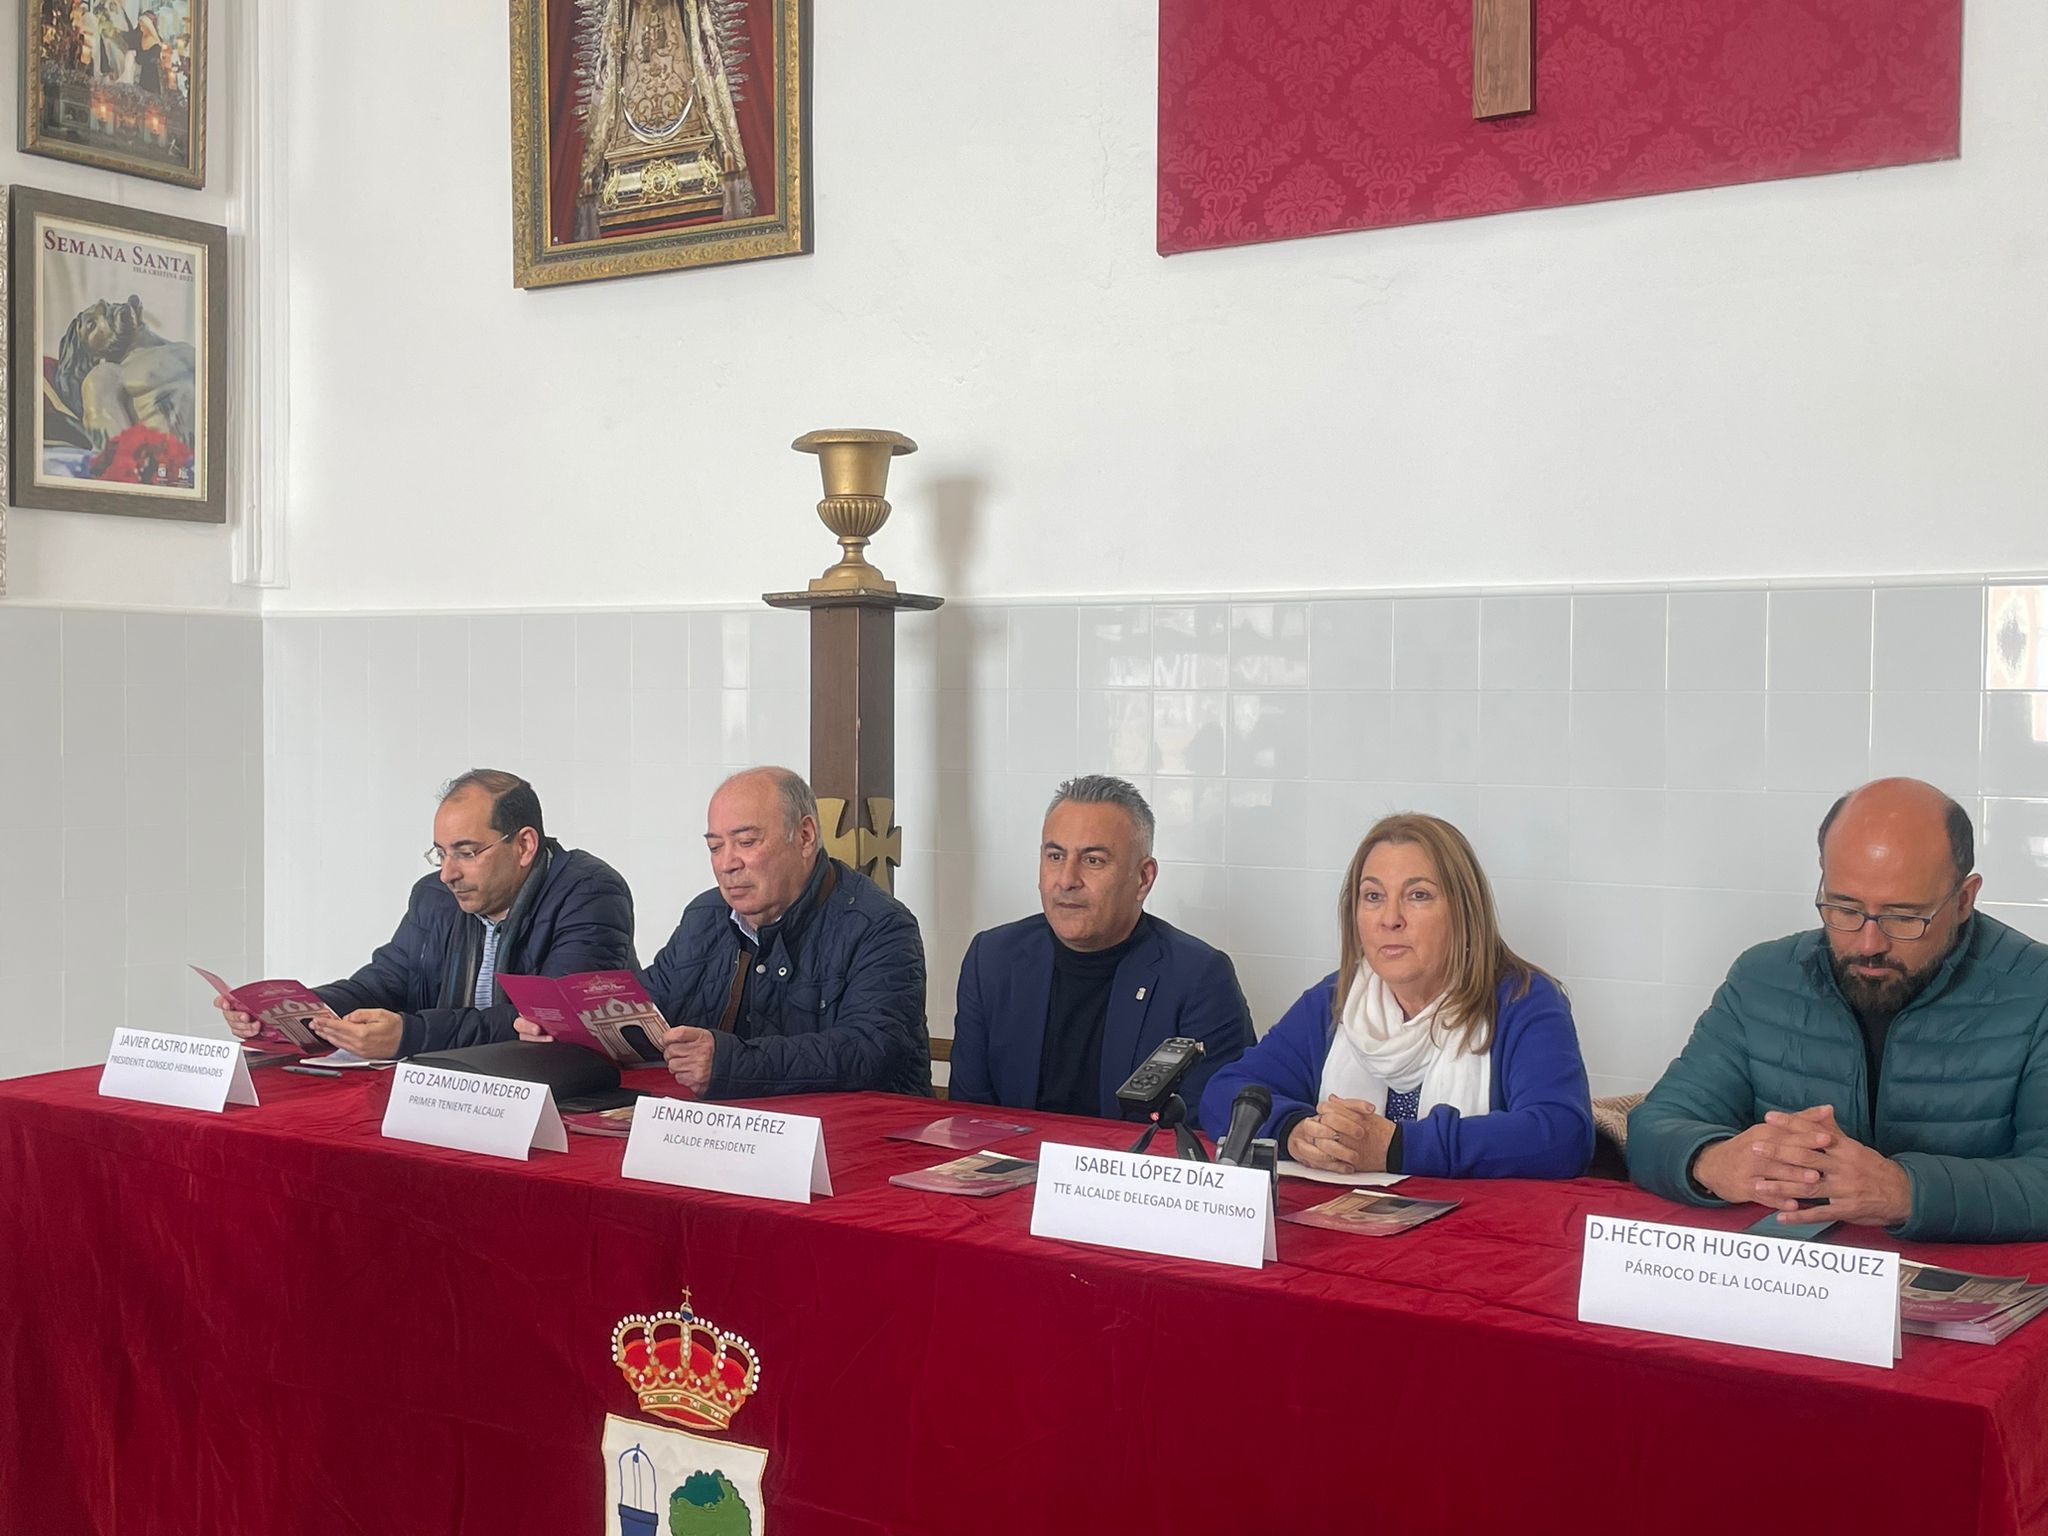 La Capilla de Nuestra Señora de los Ángeles, La ermita, de Isla Cristina abre tras las obras de rehabilitación